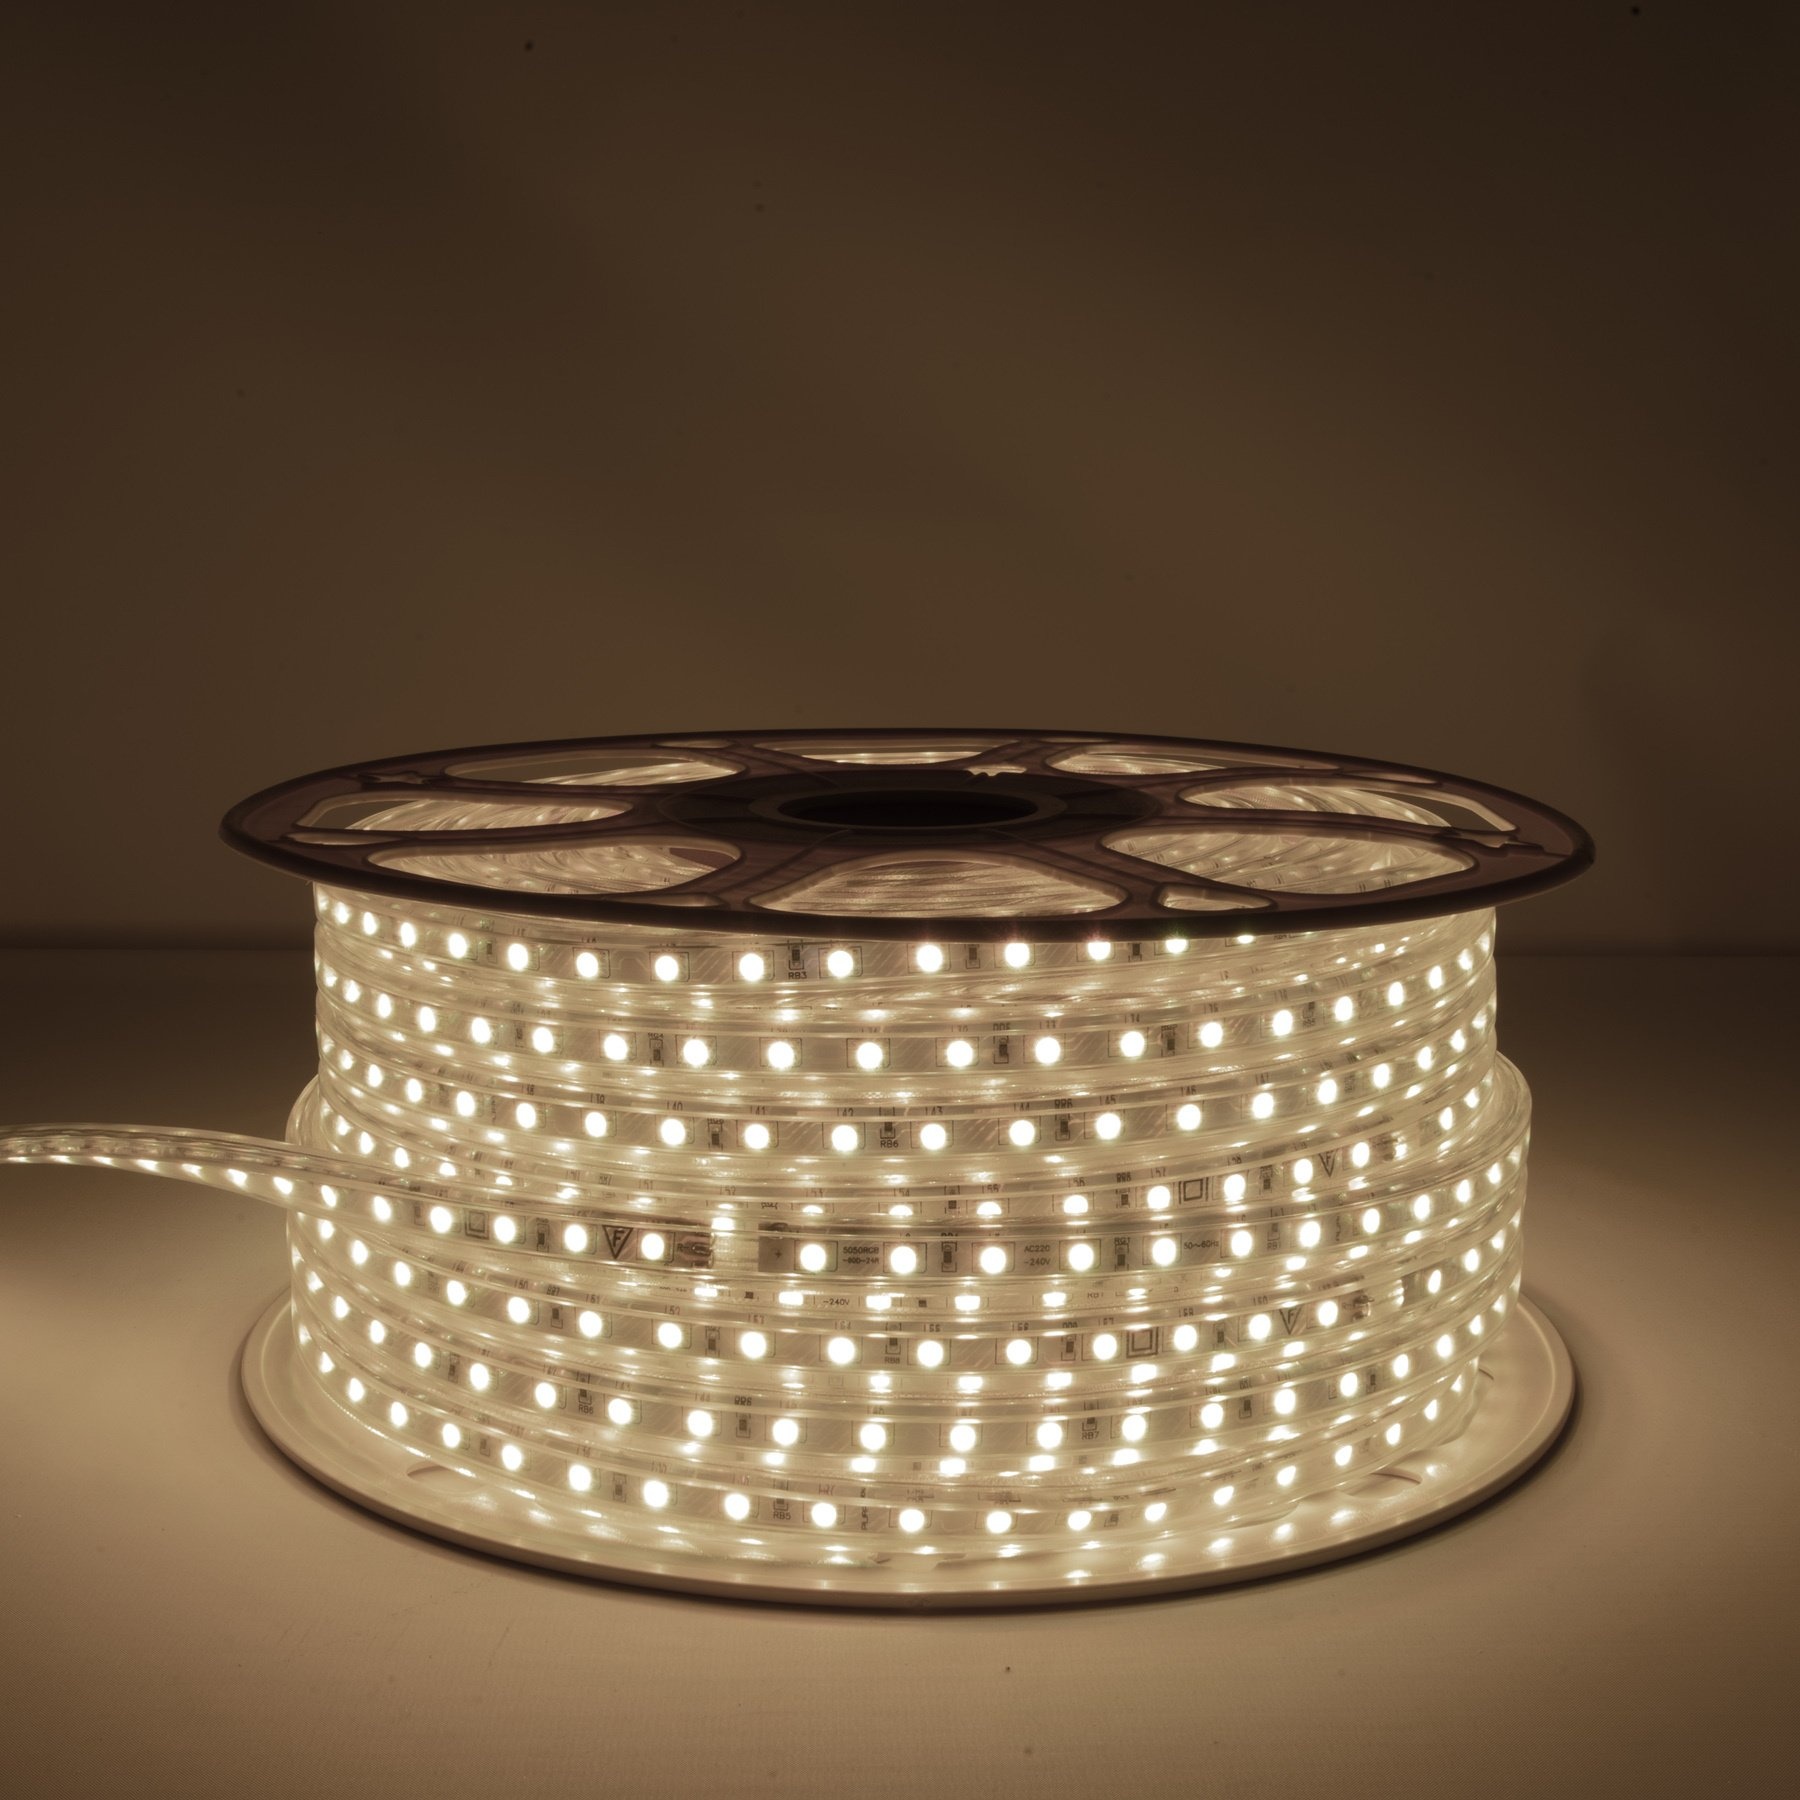 29 Watt LED Decken Lampe Wohnraum Beleuchtung Streifen Leuchte